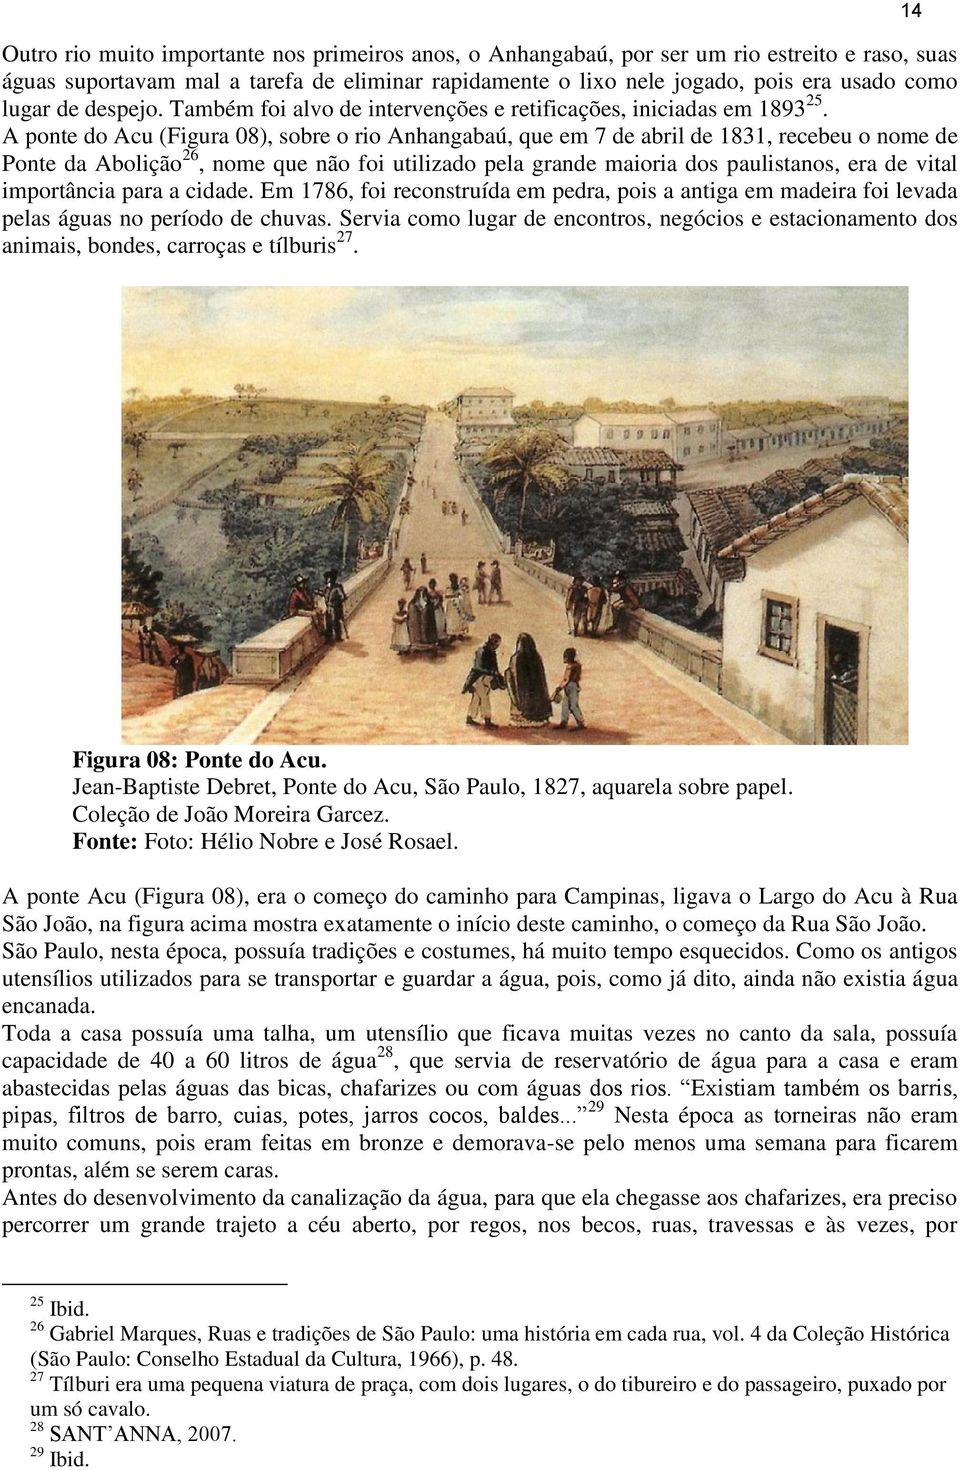 A ponte do Acu (Figura 08), sobre o rio Anhangabaú, que em 7 de abril de 1831, recebeu o nome de Ponte da Abolição 26, nome que não foi utilizado pela grande maioria dos paulistanos, era de vital